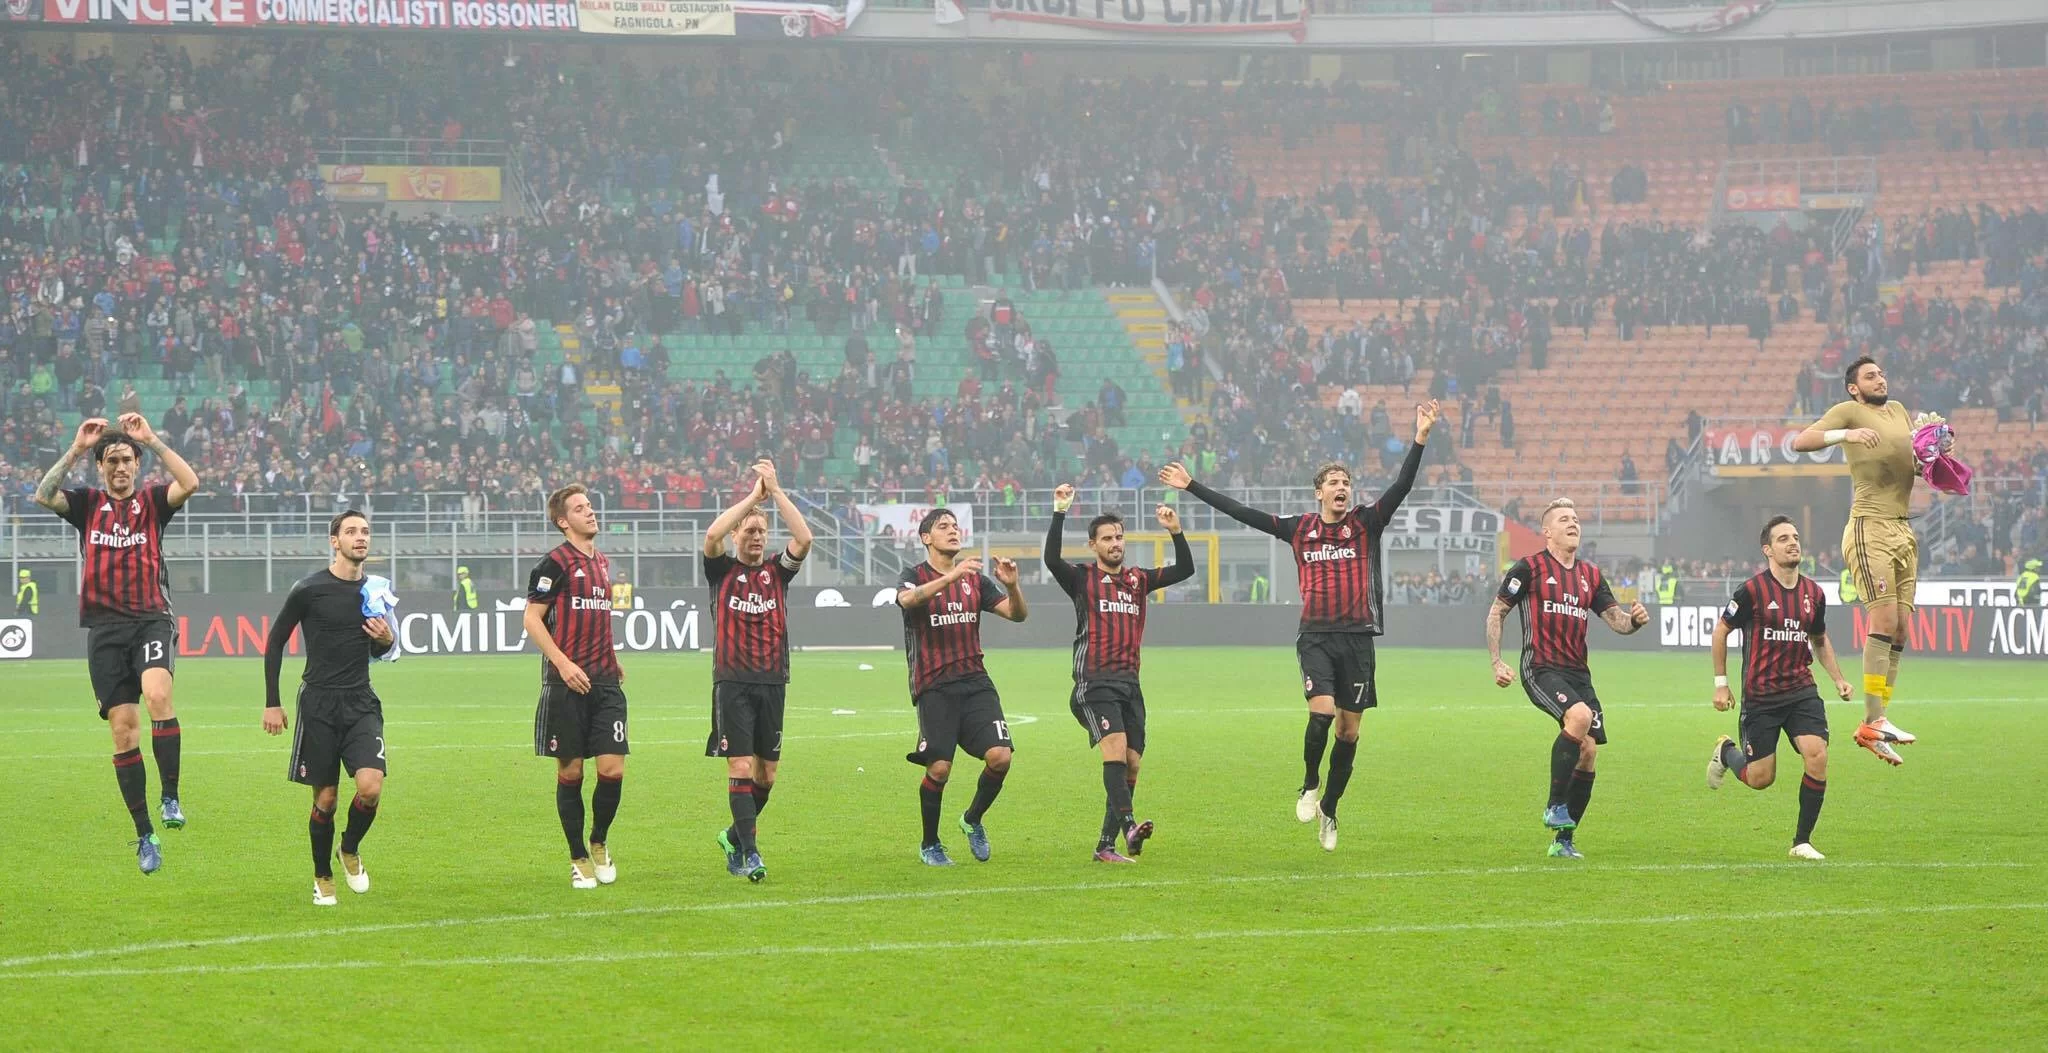 La gioia di acmilan.com: “Il Milan riparte, battuto il Pescara 1-0”